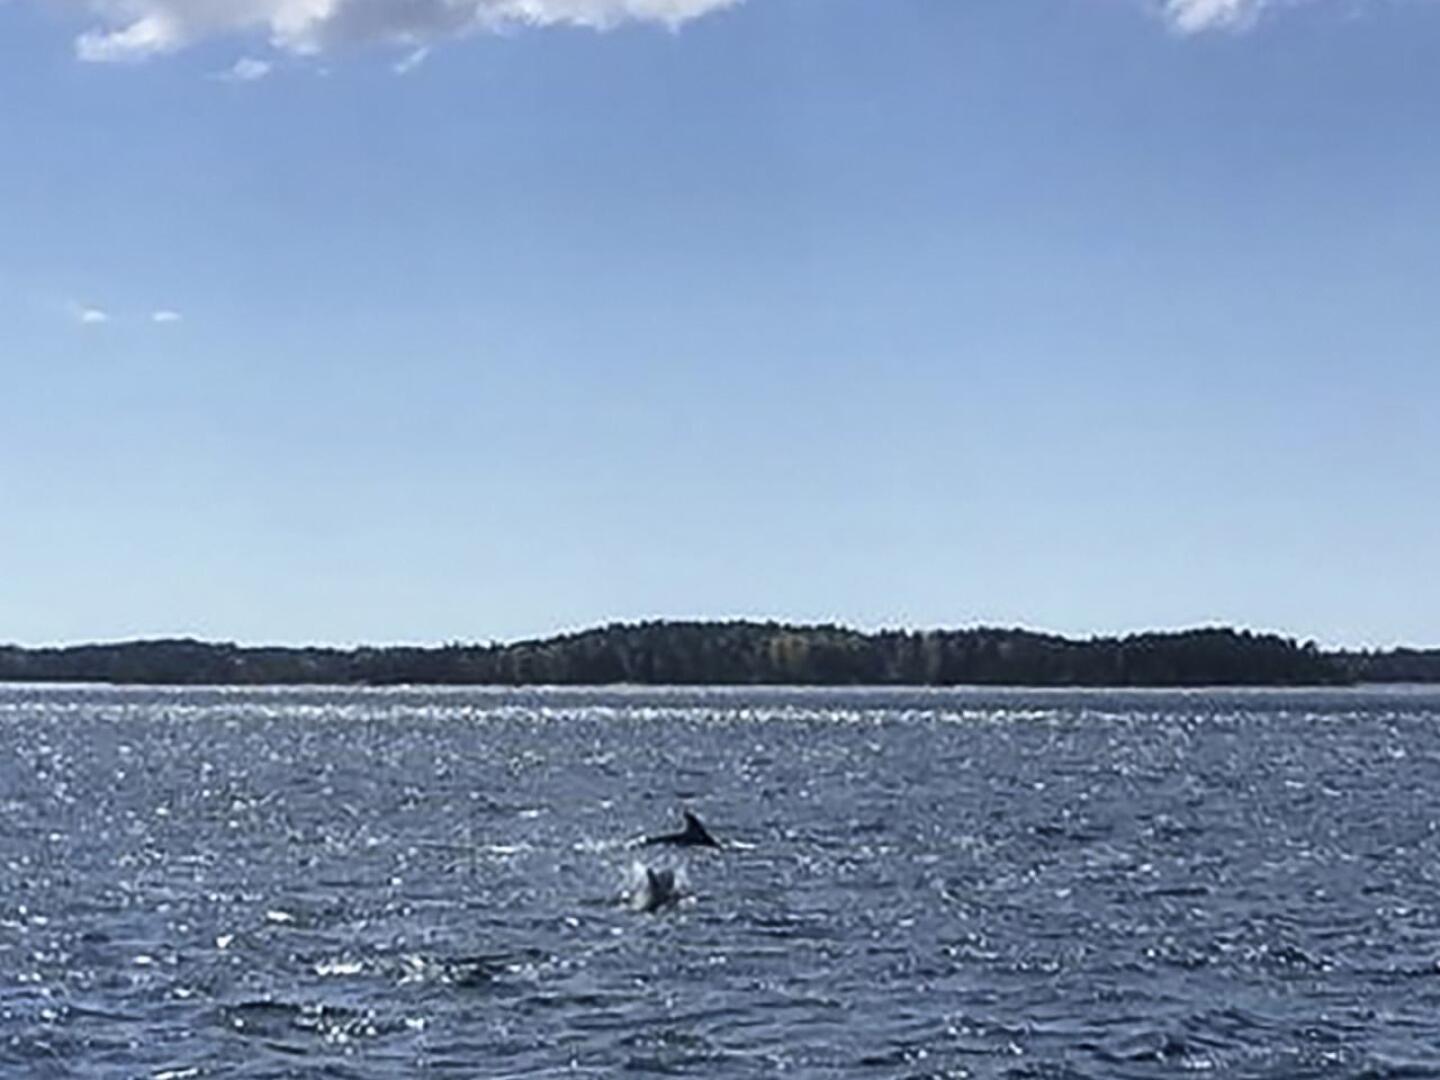 Kemiönsaaren edustalla uiskentelee parhaillaan kolmen pullokuonodelfiinin parvi. Kyseessä on erittäin harvinainen havainto, sillä yleensä delfiinit viihtyvät valtamerissä.